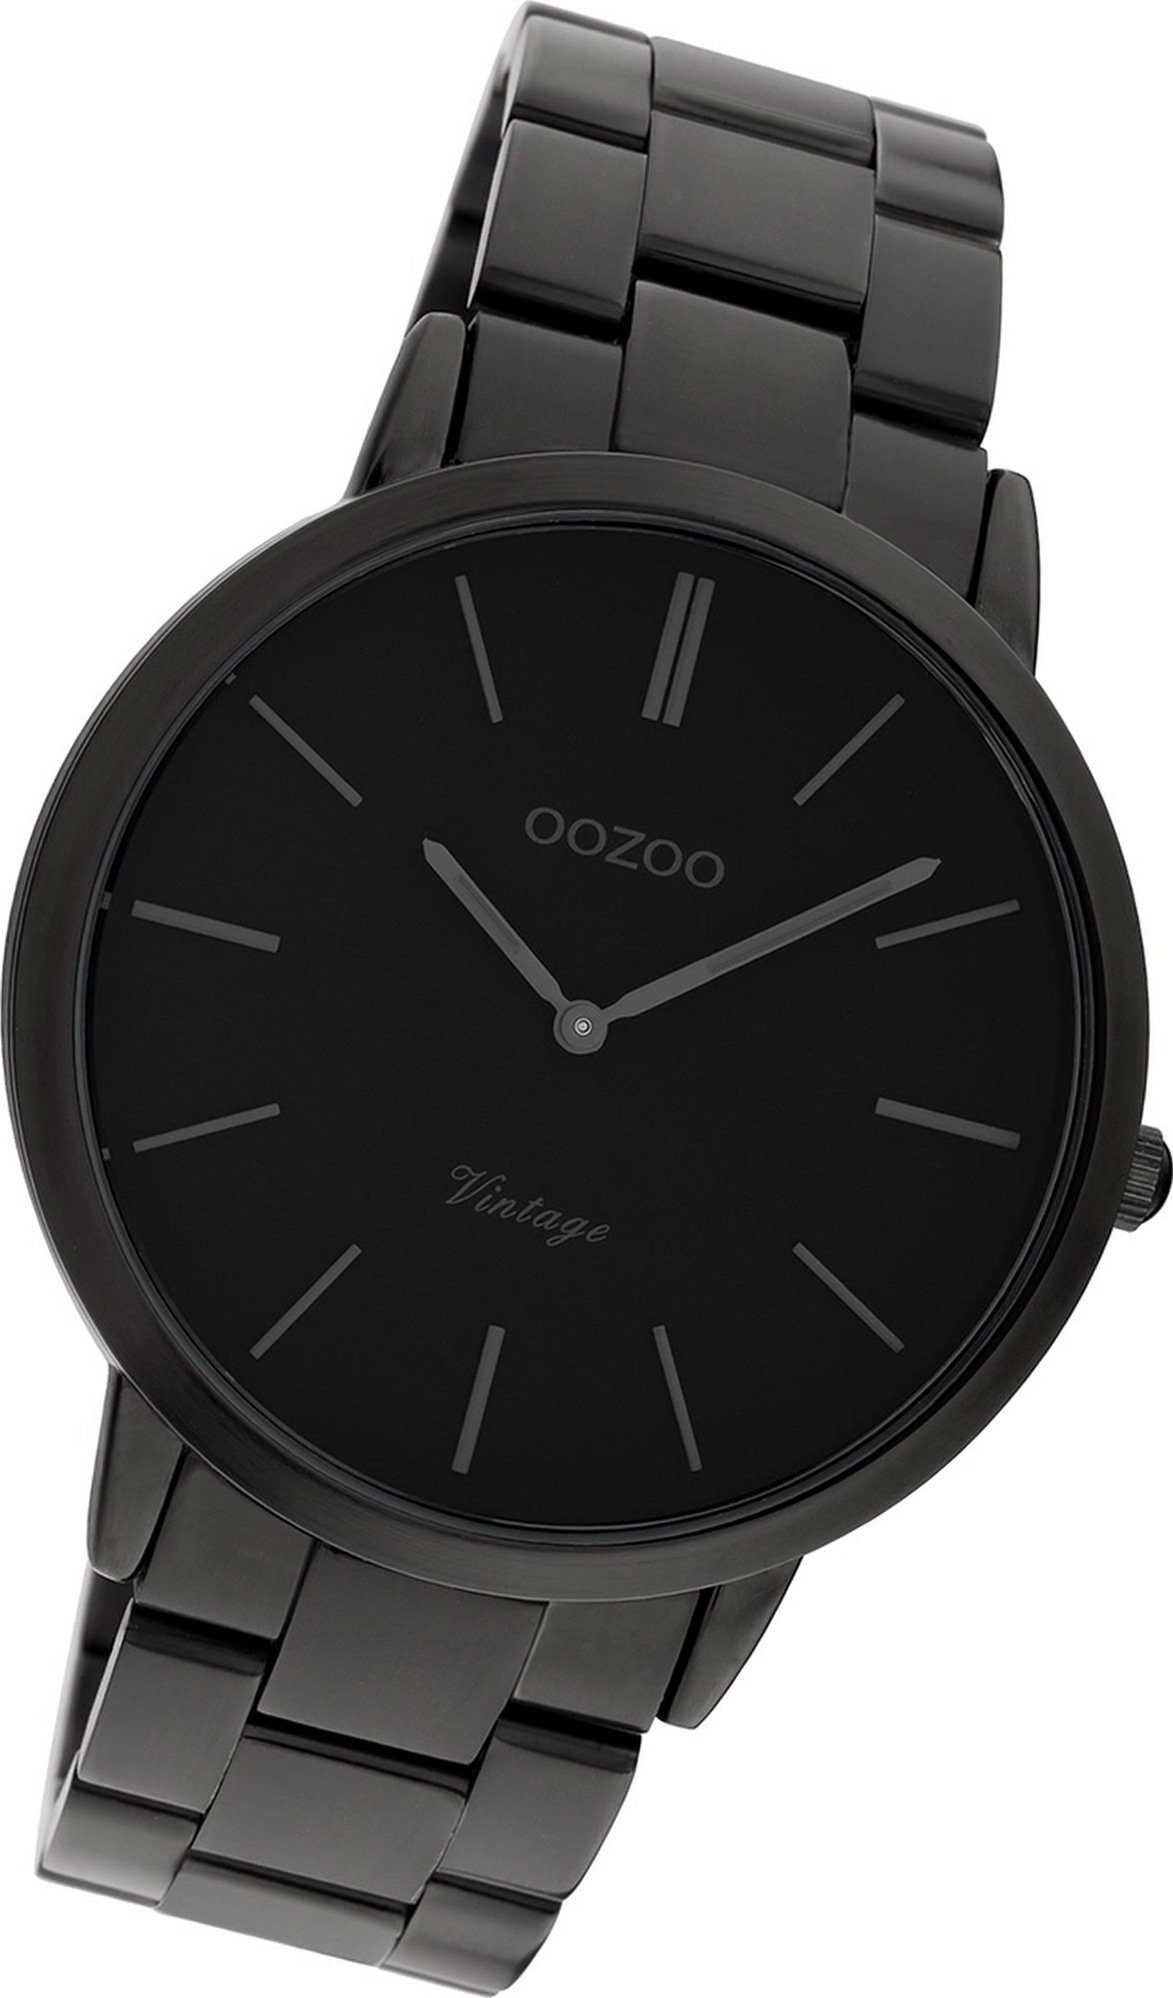 OOZOO Quarzuhr Oozoo Edelstahl Damen Uhr C20025, Damenuhr Edelstahlarmband schwarz, rundes Gehäuse, groß (ca. 42mm)